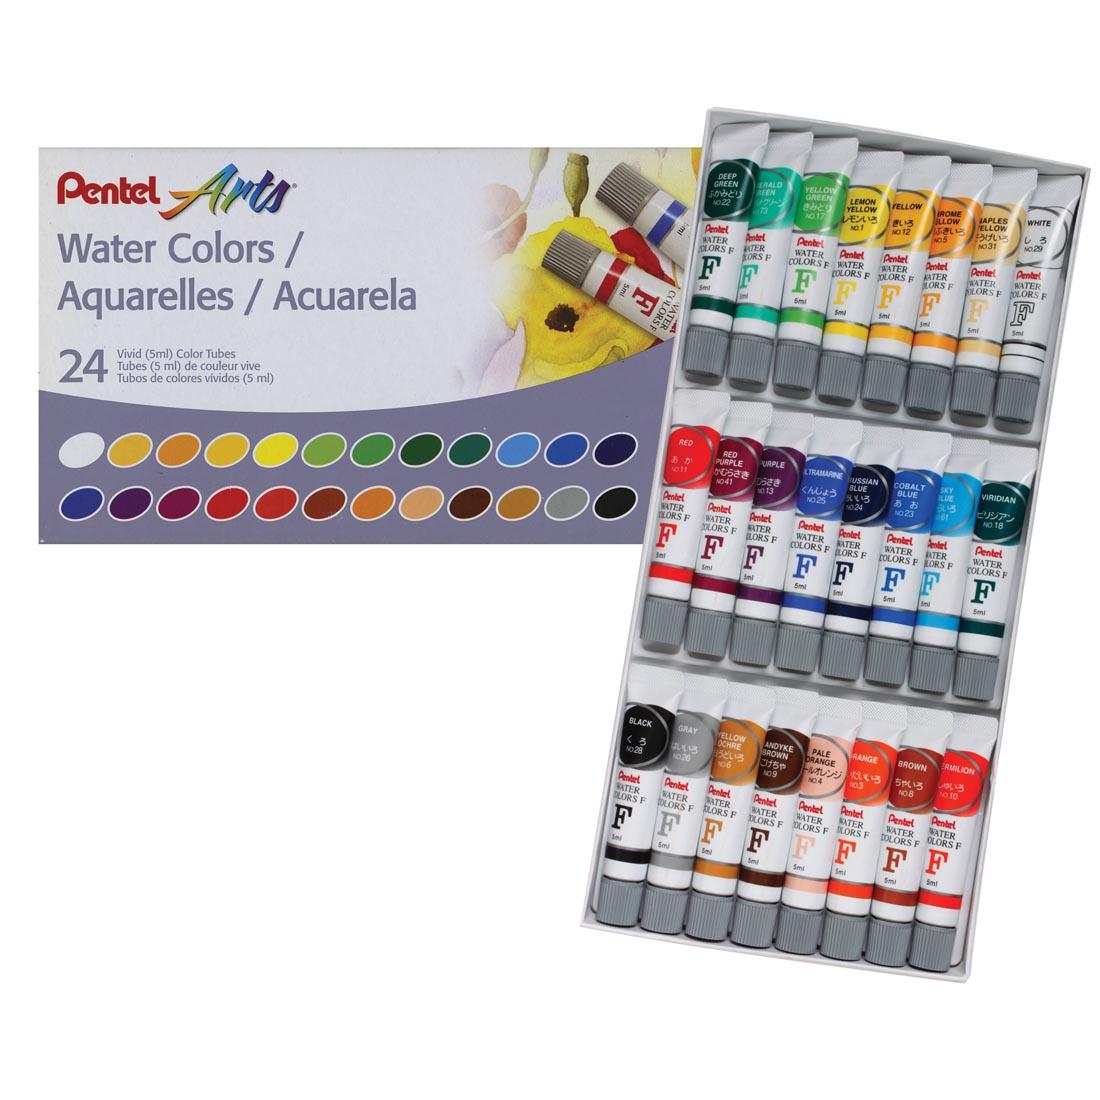 Pentel Arts 24-Color Water Color Set